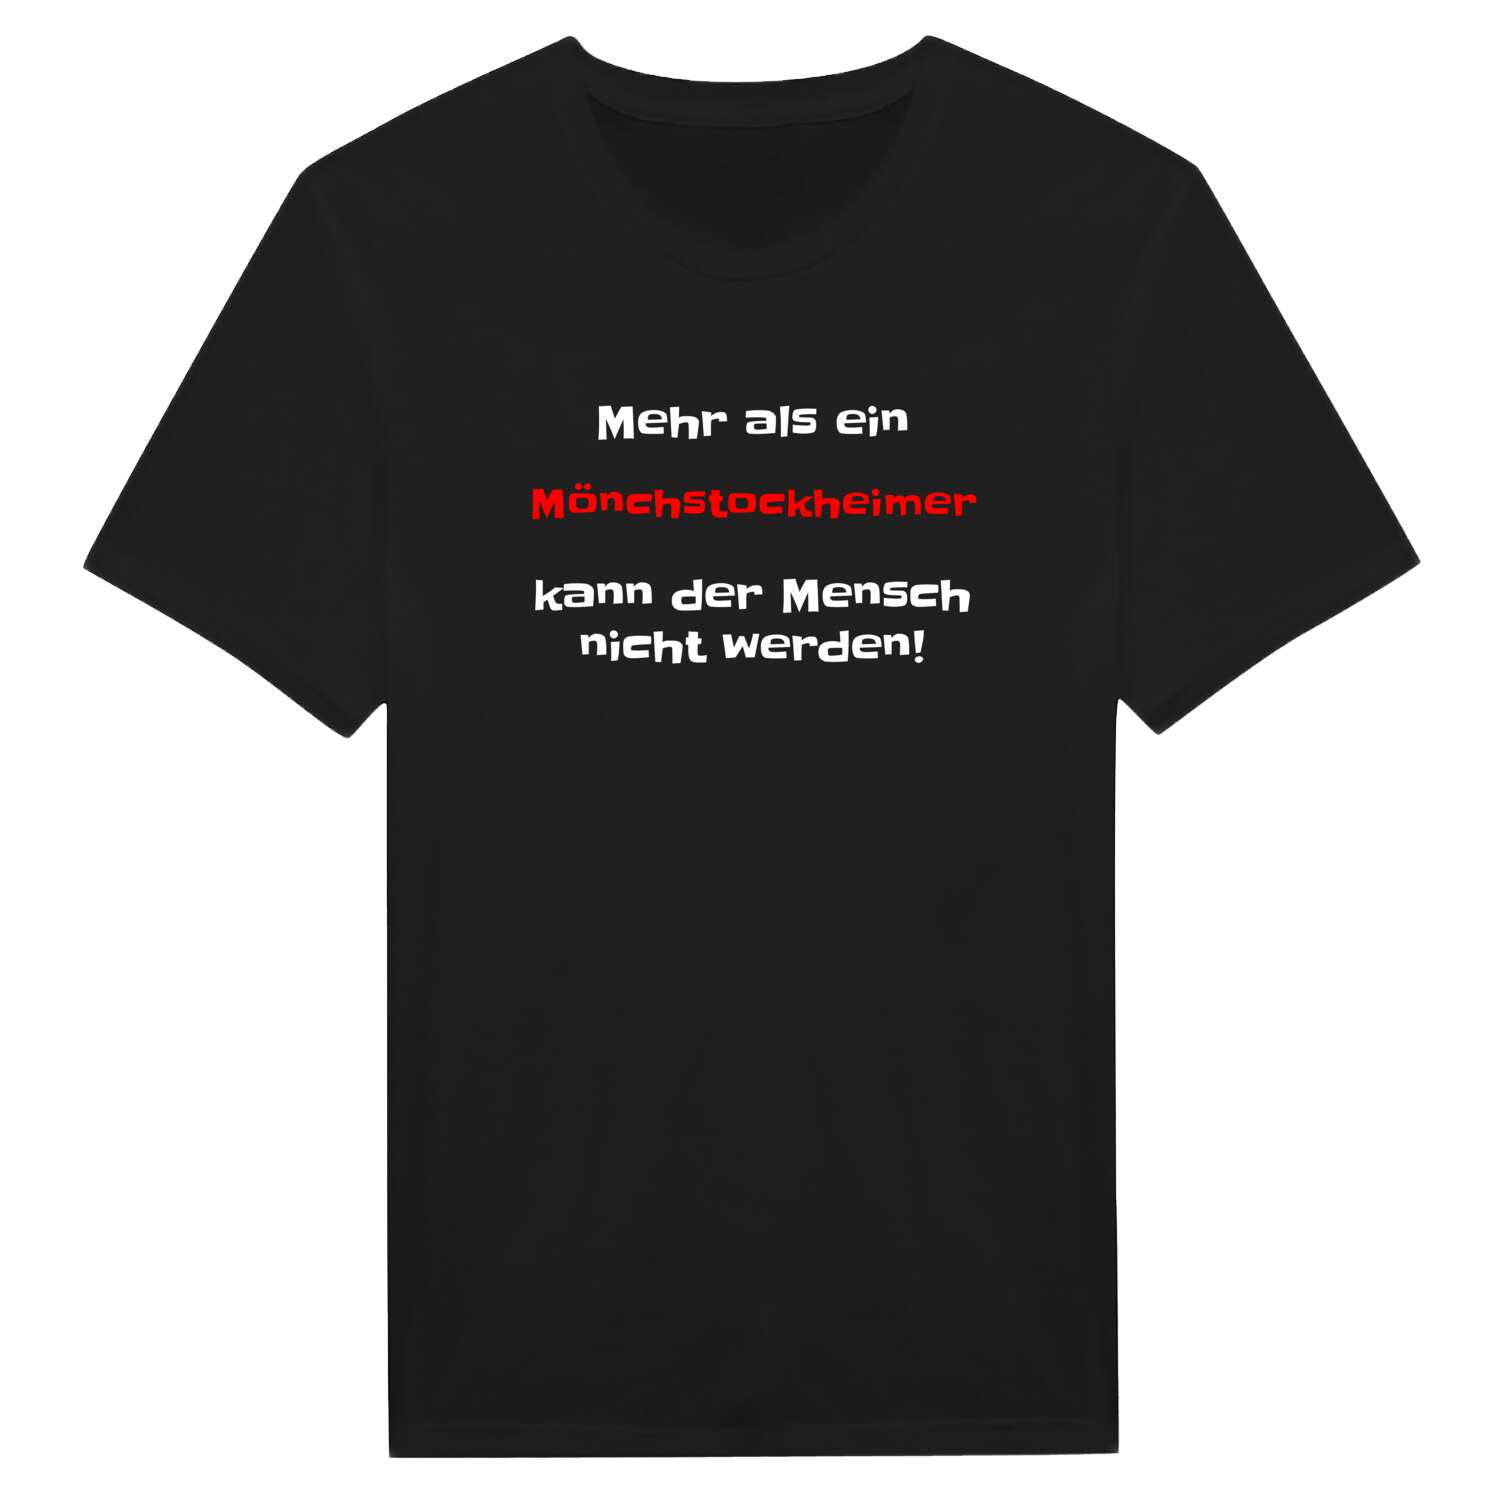 Mönchstockheim T-Shirt »Mehr als ein«